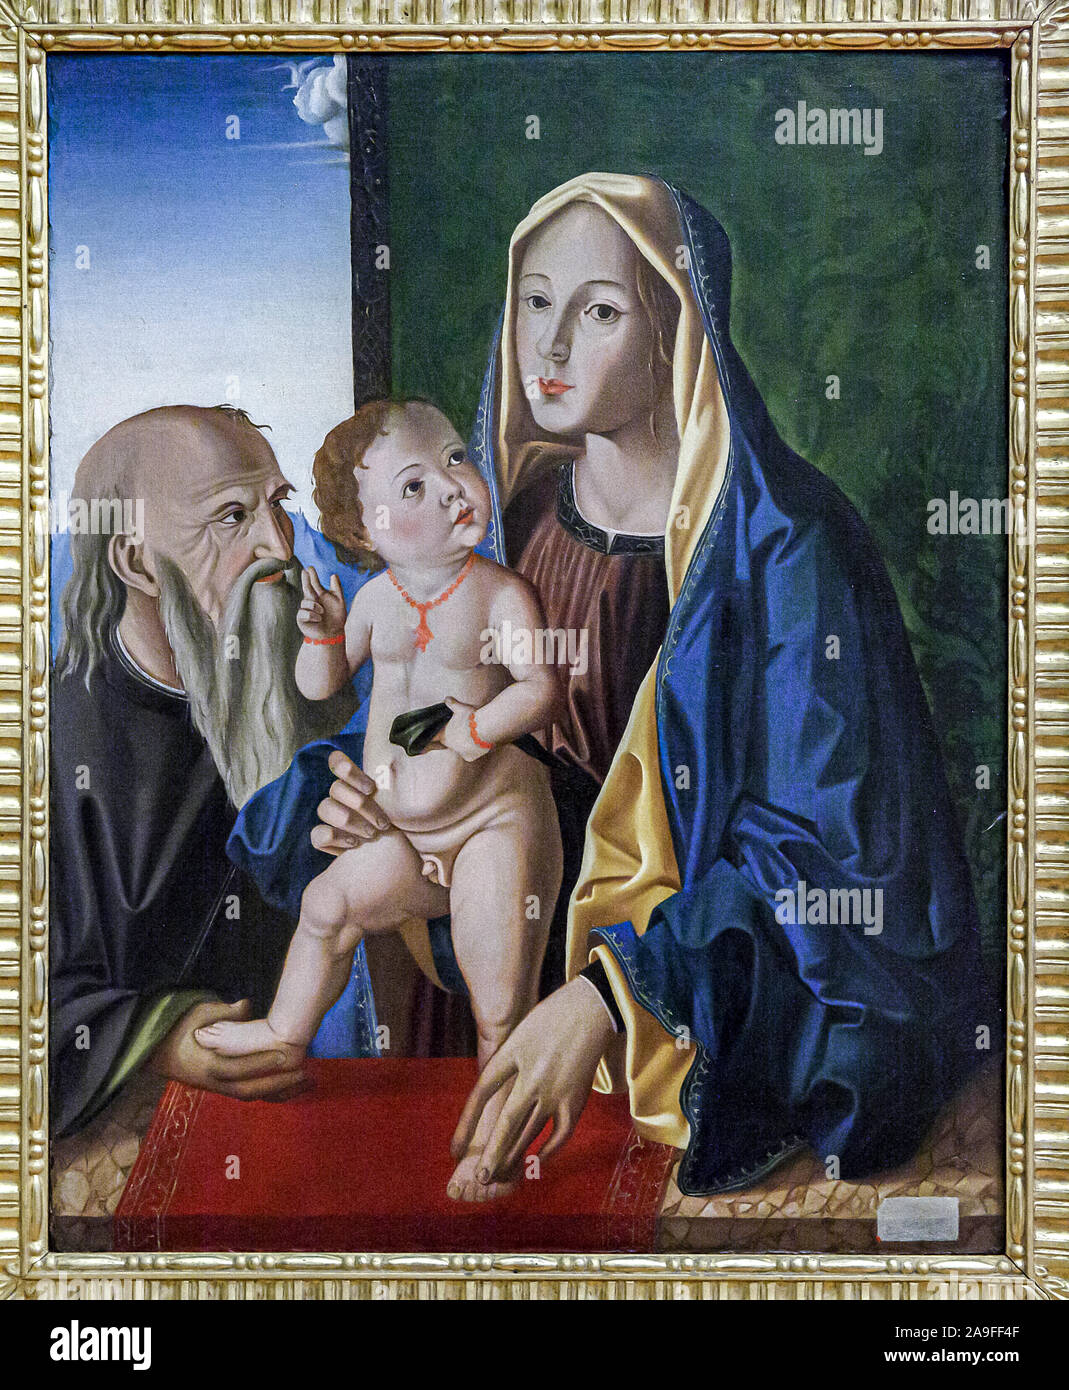 Italia Emilia Romagna Forlì - galleria d'Arte di San Domenico musei - Sacra Famiglia: officina di Marco Palmezzano Foto Stock